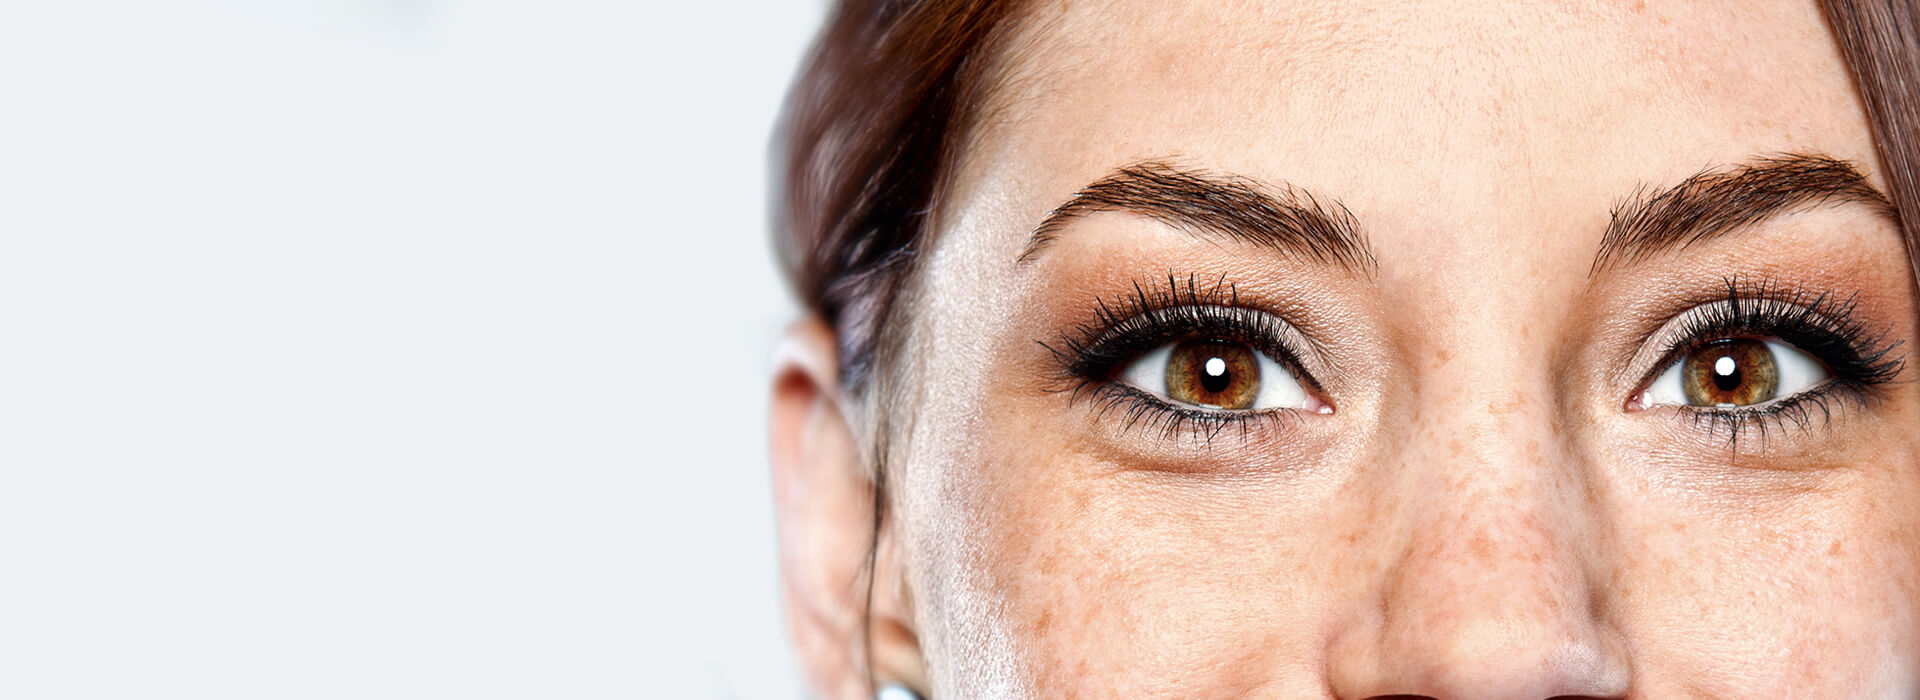 Trockene Augen: Ursachen, Symptome & Tipps zur Linderung der Augenbeschwerden